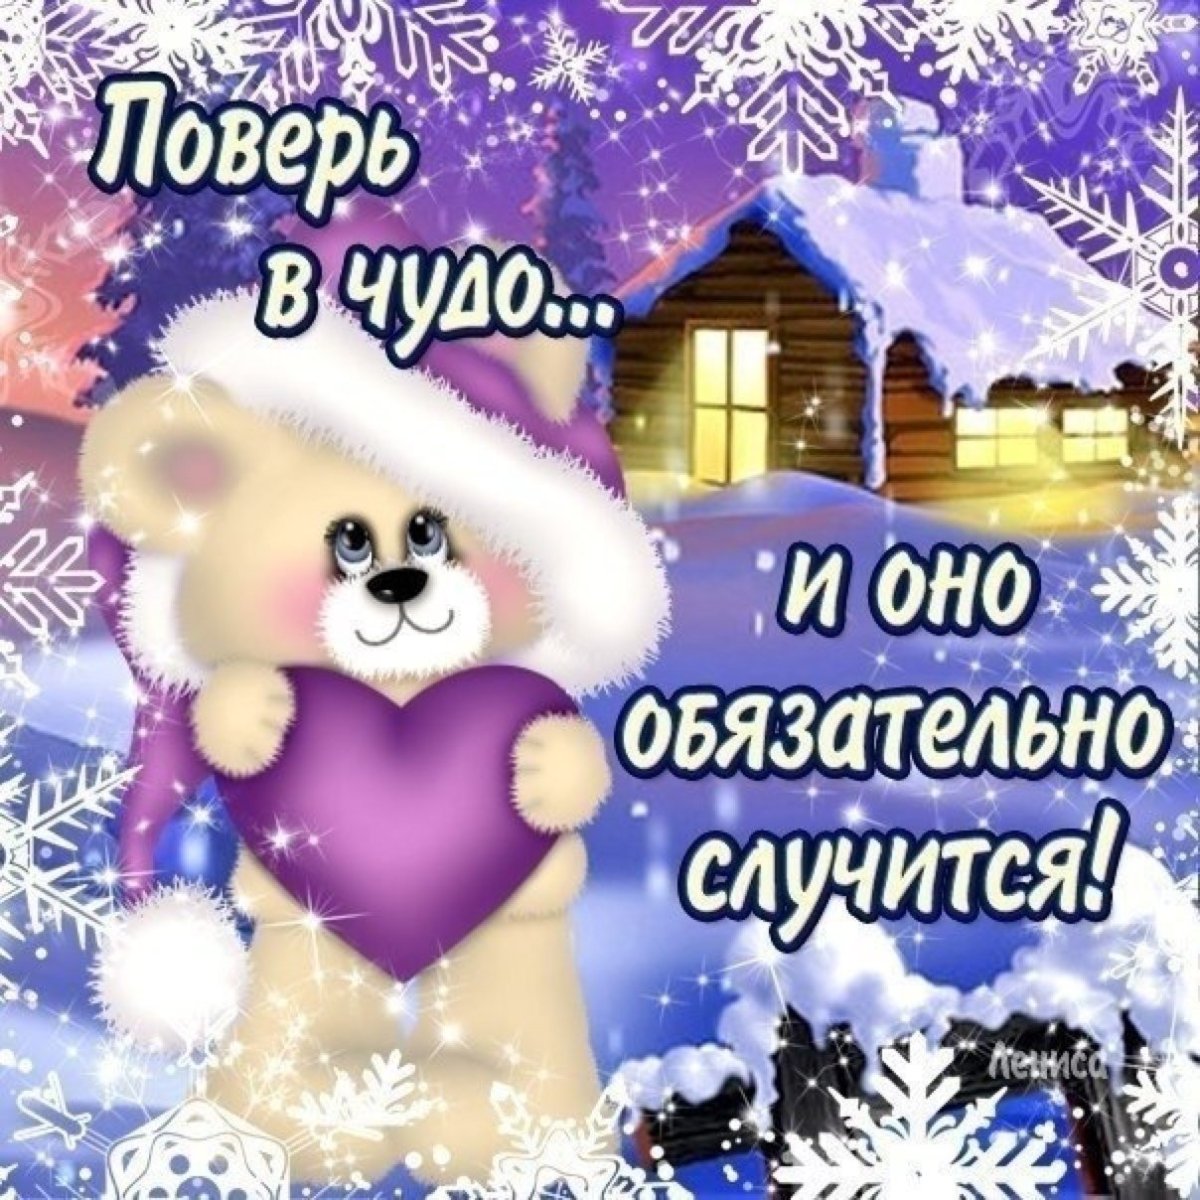 Пожелание нового зимнего дня. Зимние открытки с пожеланиями. Желаю удачи и хорошего настроения зимой. Здоровья и хорошего настроения в новом году. Доброго здоровья и хорошего зимнего настроения.